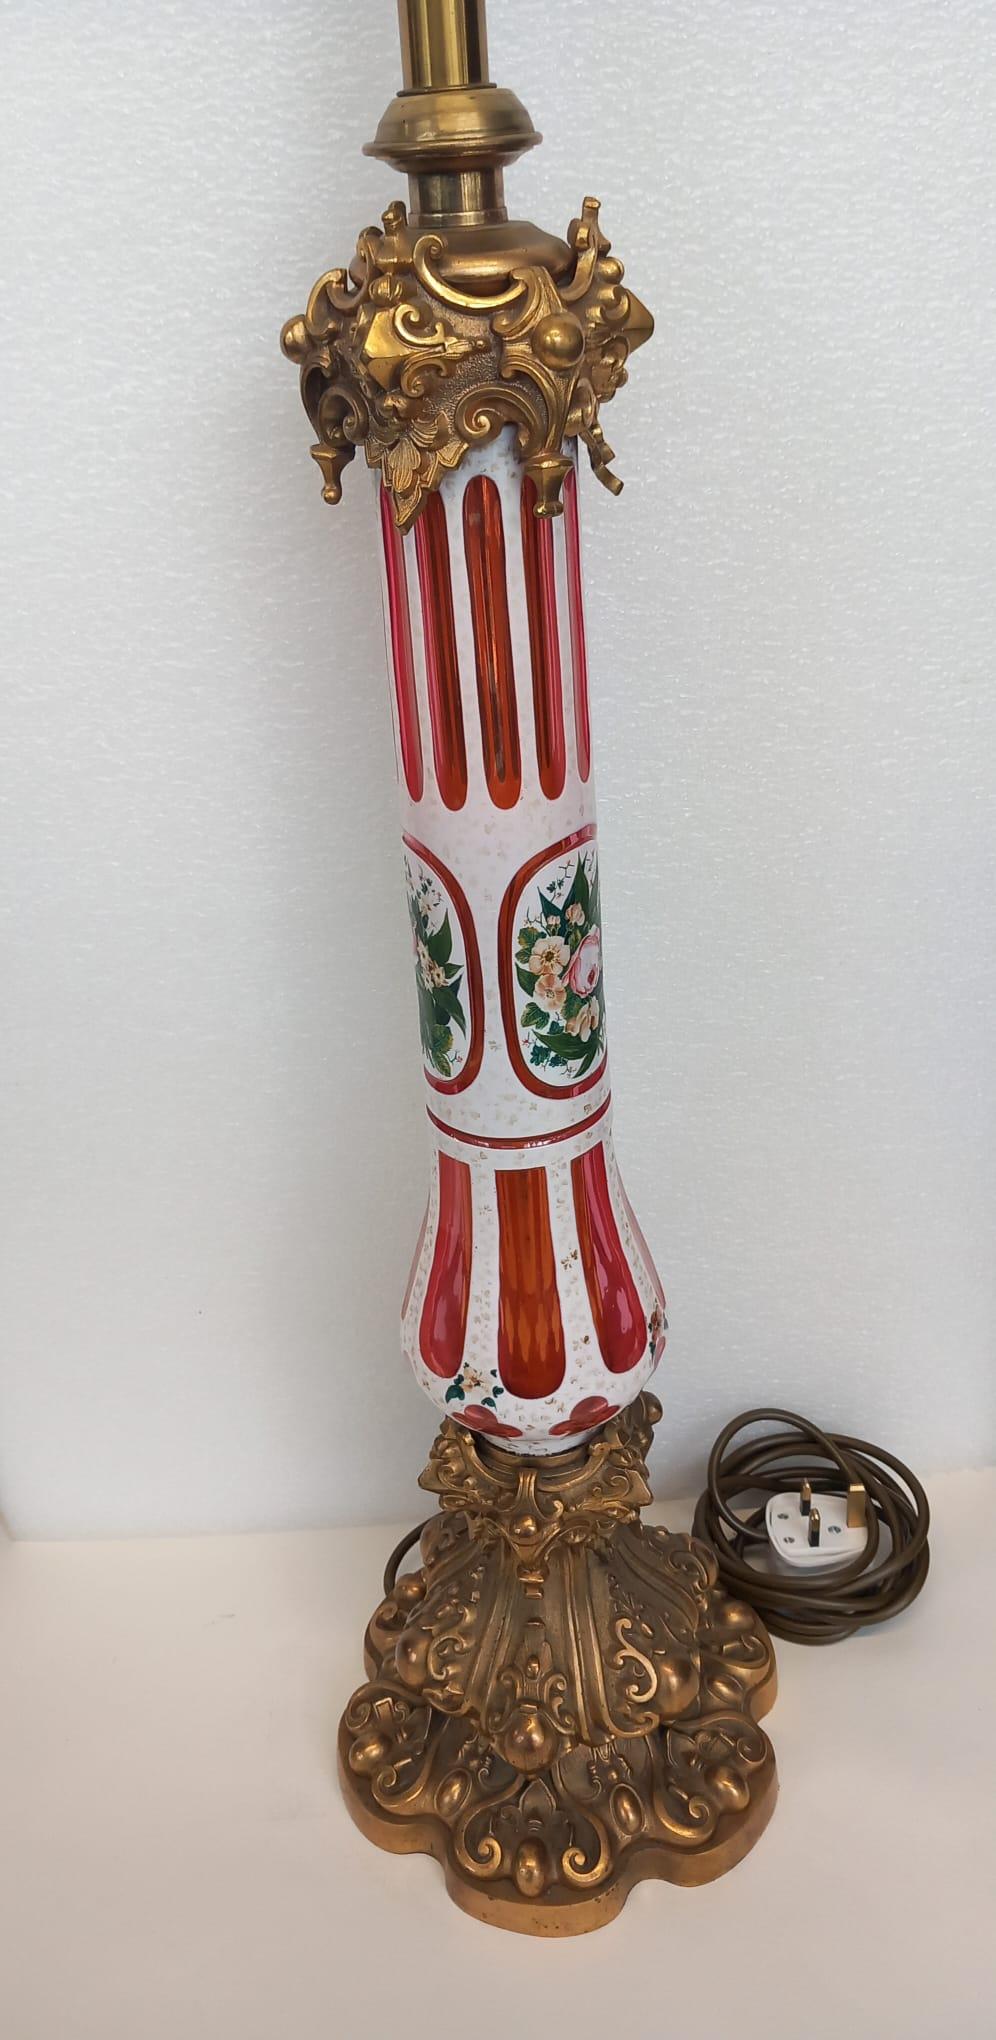 Lampe en verre rouge de Bohême datant du milieu du XIXe siècle, décorée d'un motif en émail blanc rayé, peint à la main avec une décoration florale élaborée.
La lampe en verre repose sur un pied ou une base de style gothique en bronze doré. 
La